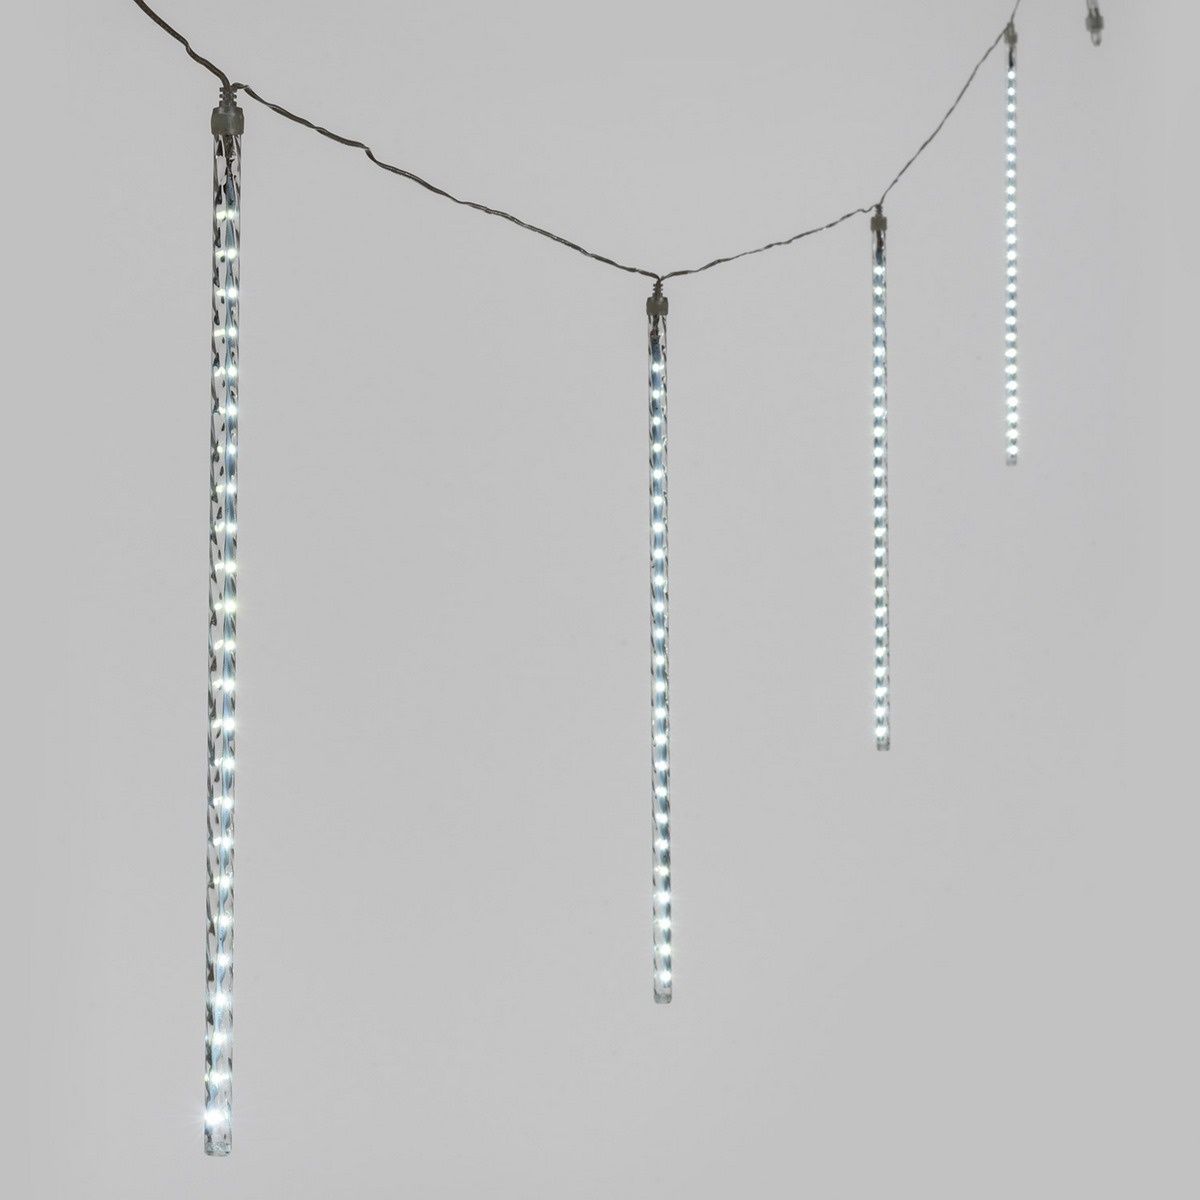 Řetěz padající kapky 10480, 10 trubic 50 cm s 480 LED studená bílá            - 4home.cz